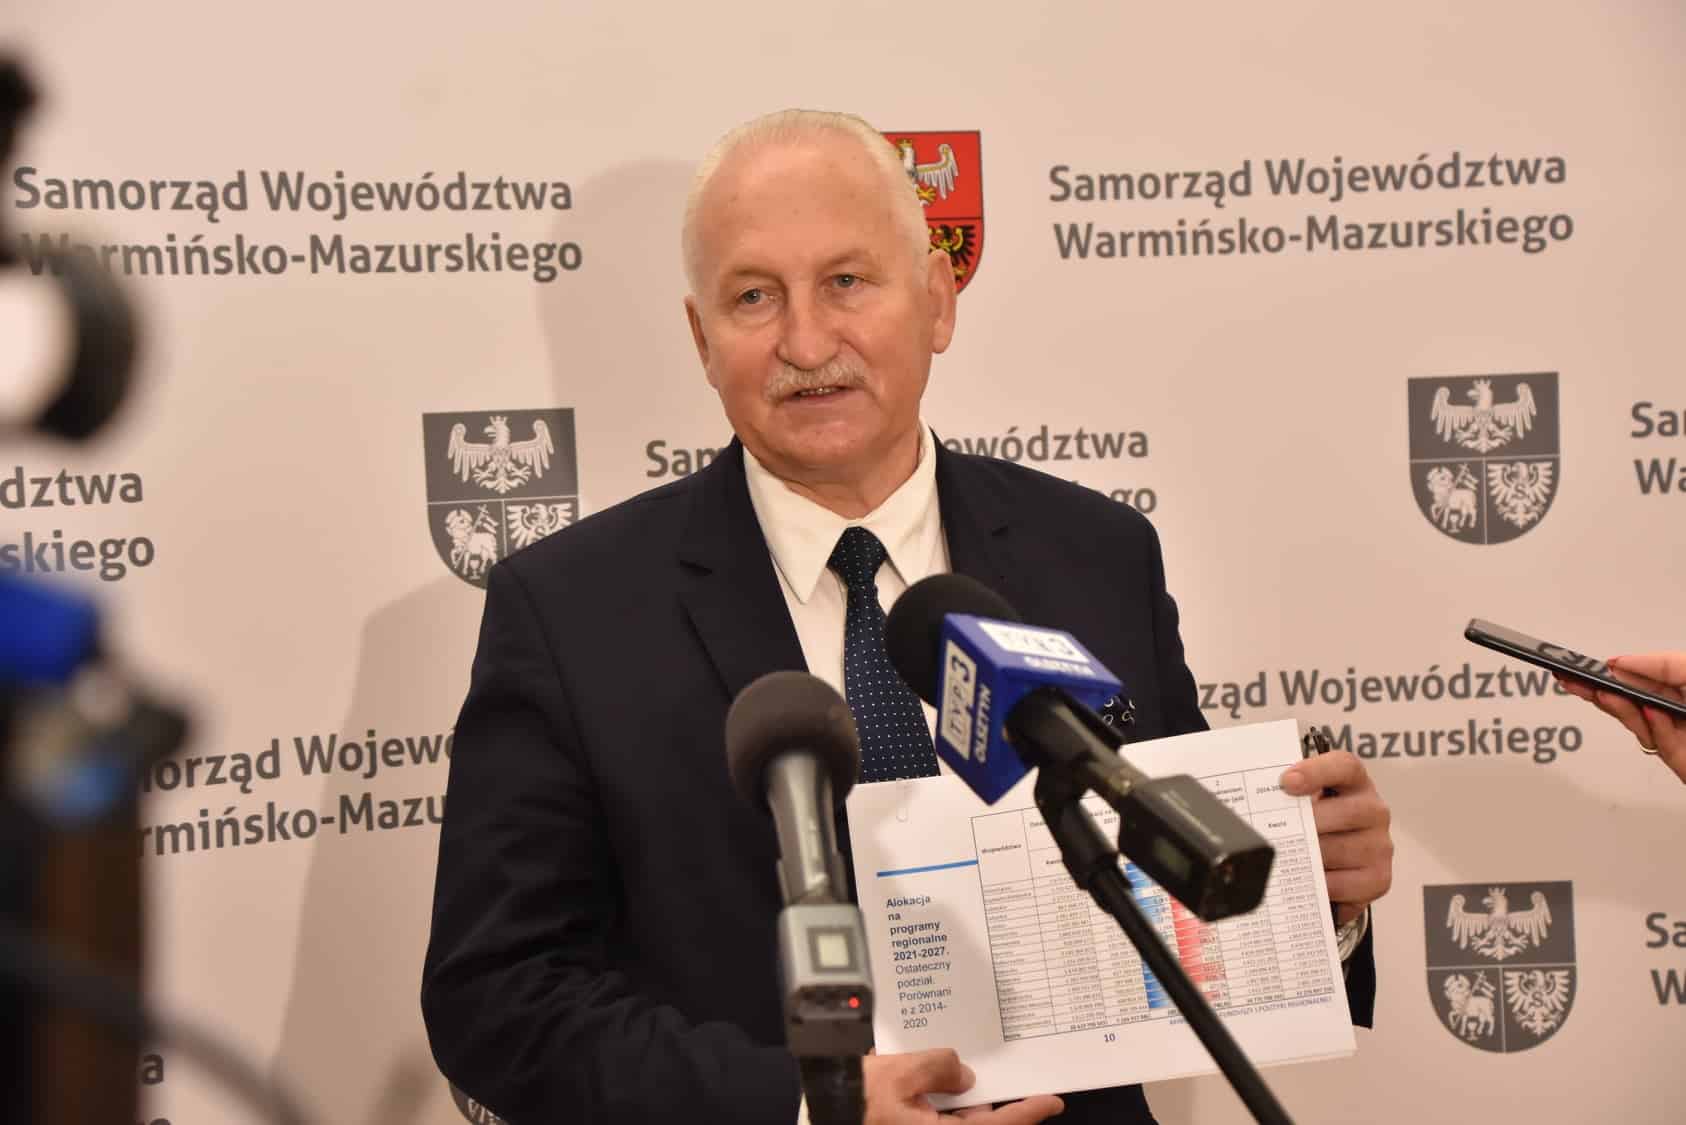 Samorząd województwa warmińsko-mazurskiego: Z nowego RPO inwestycje w Szymanach i port w Elblągu finanse Galerie